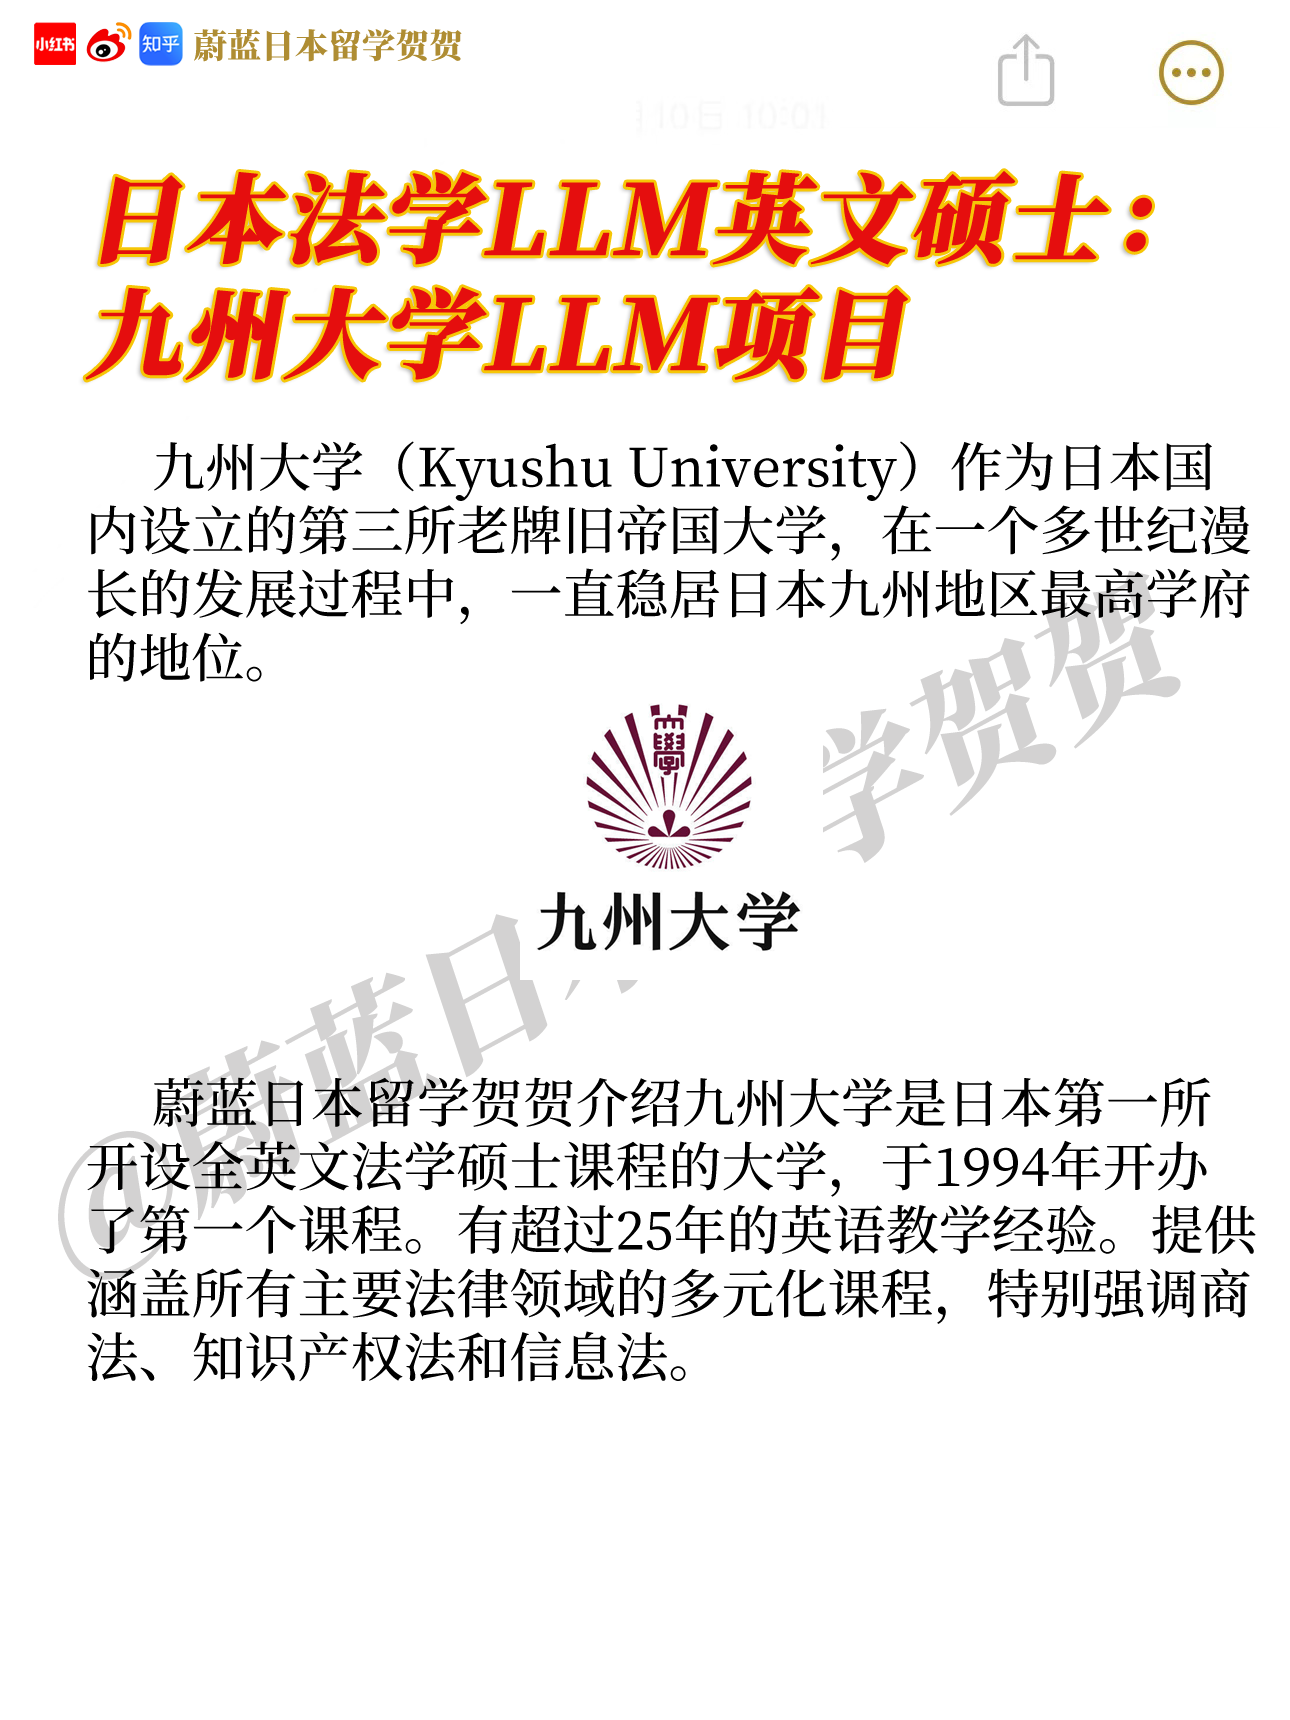 日本llm法学修士项目开设的大学有哪些？